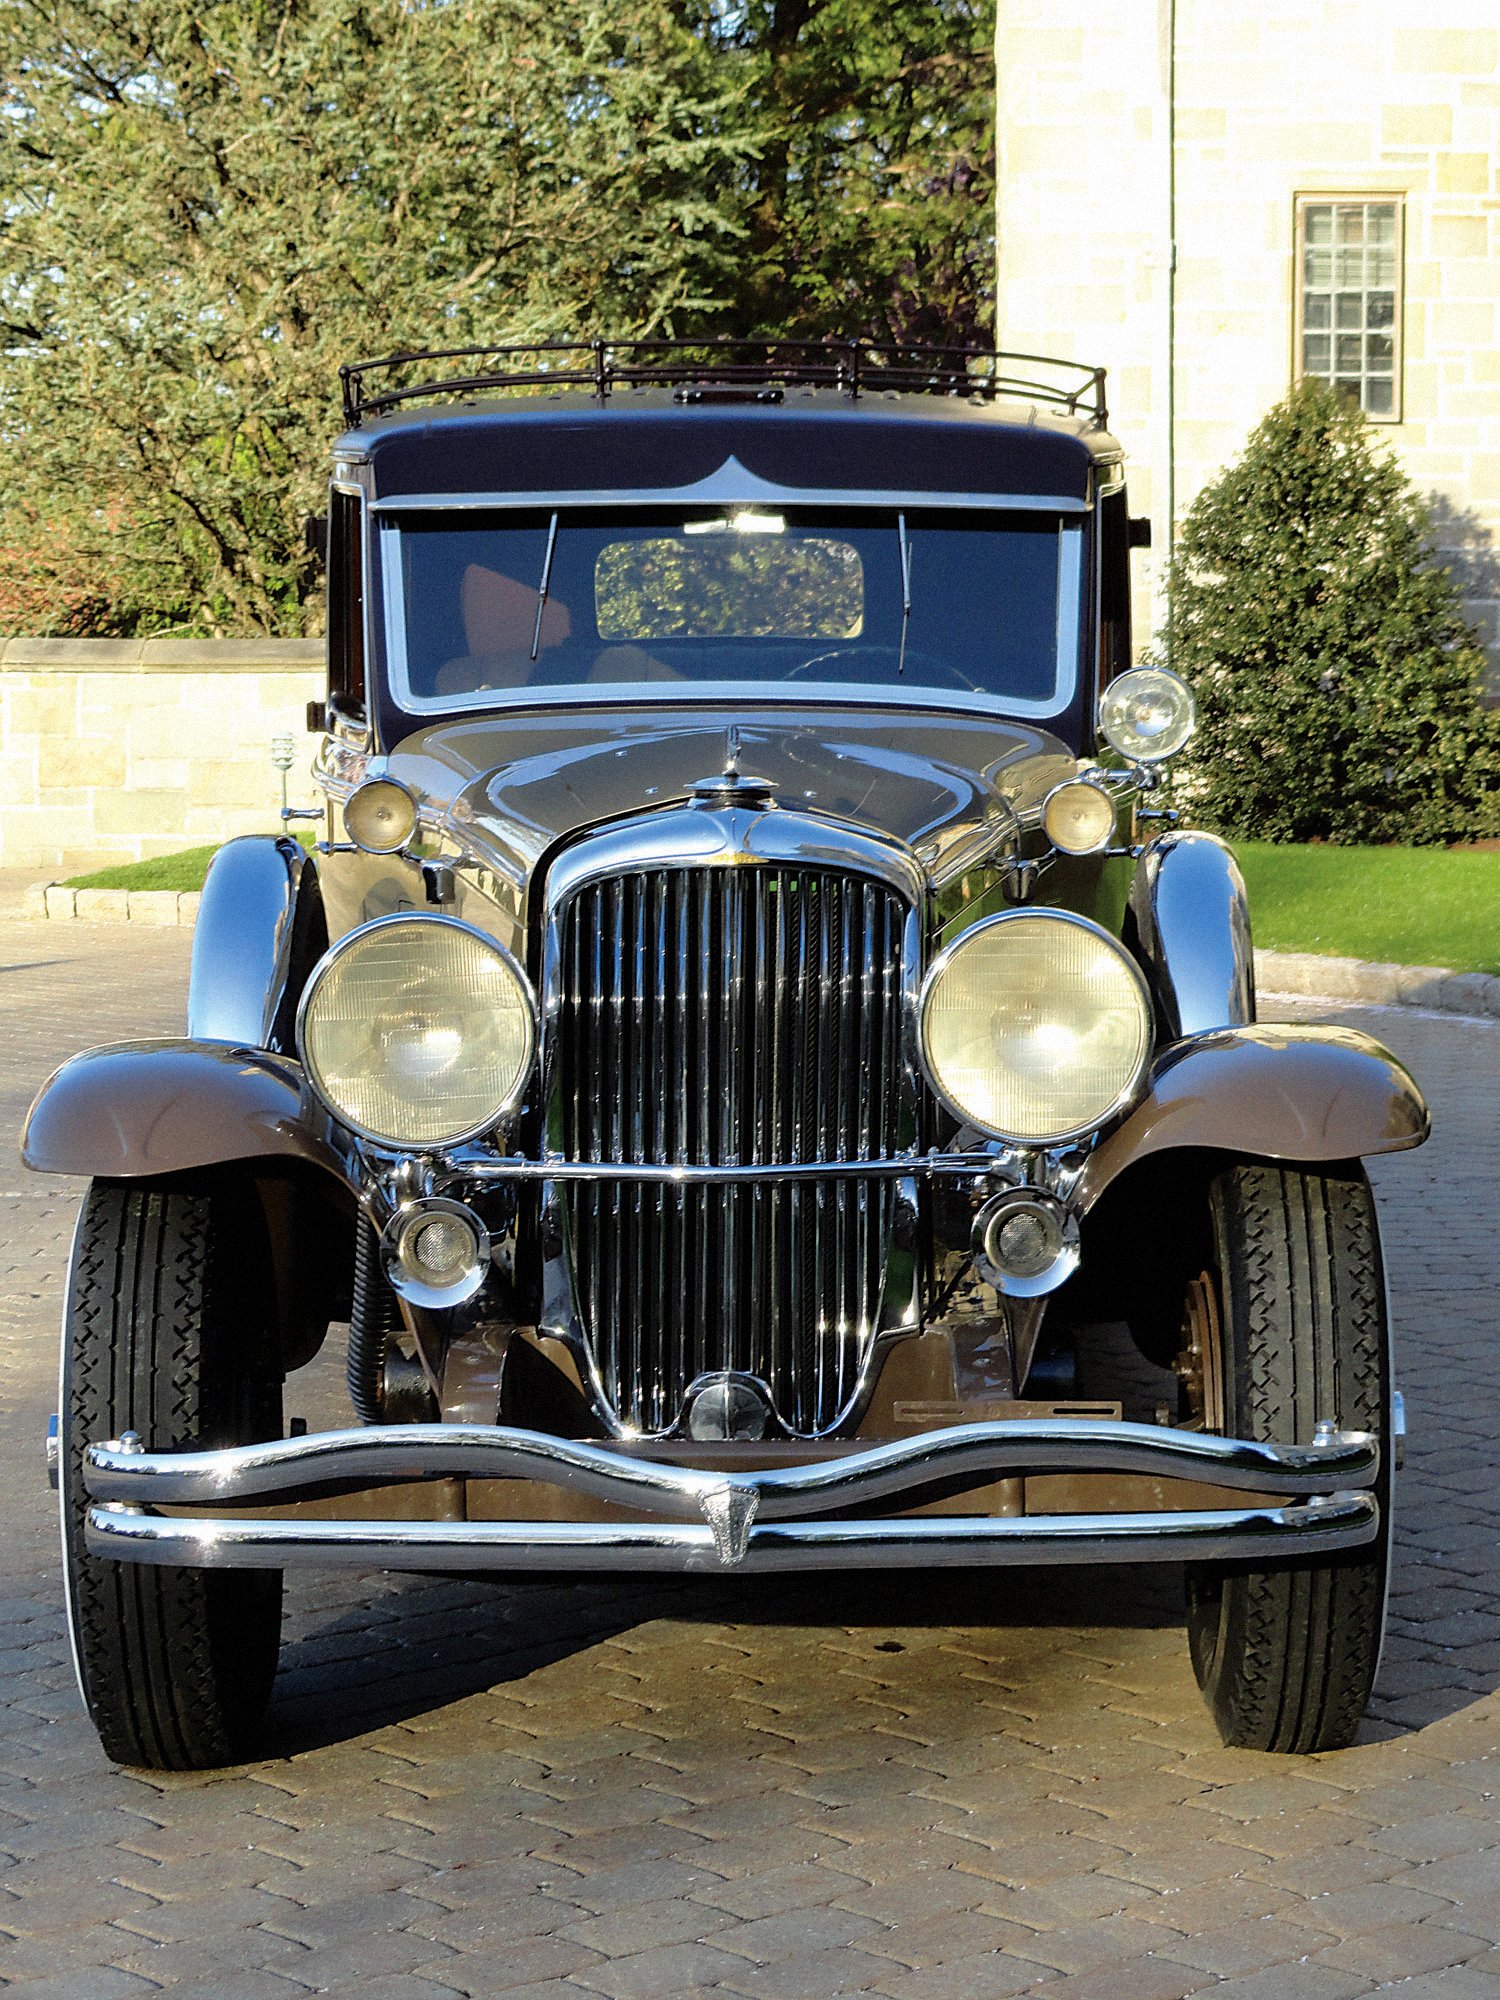 1934, Duesenberg, S j, 5142543, 7 passenger, Limousine, Lwb, Rollston, Luxury, Vintage Wallpaper